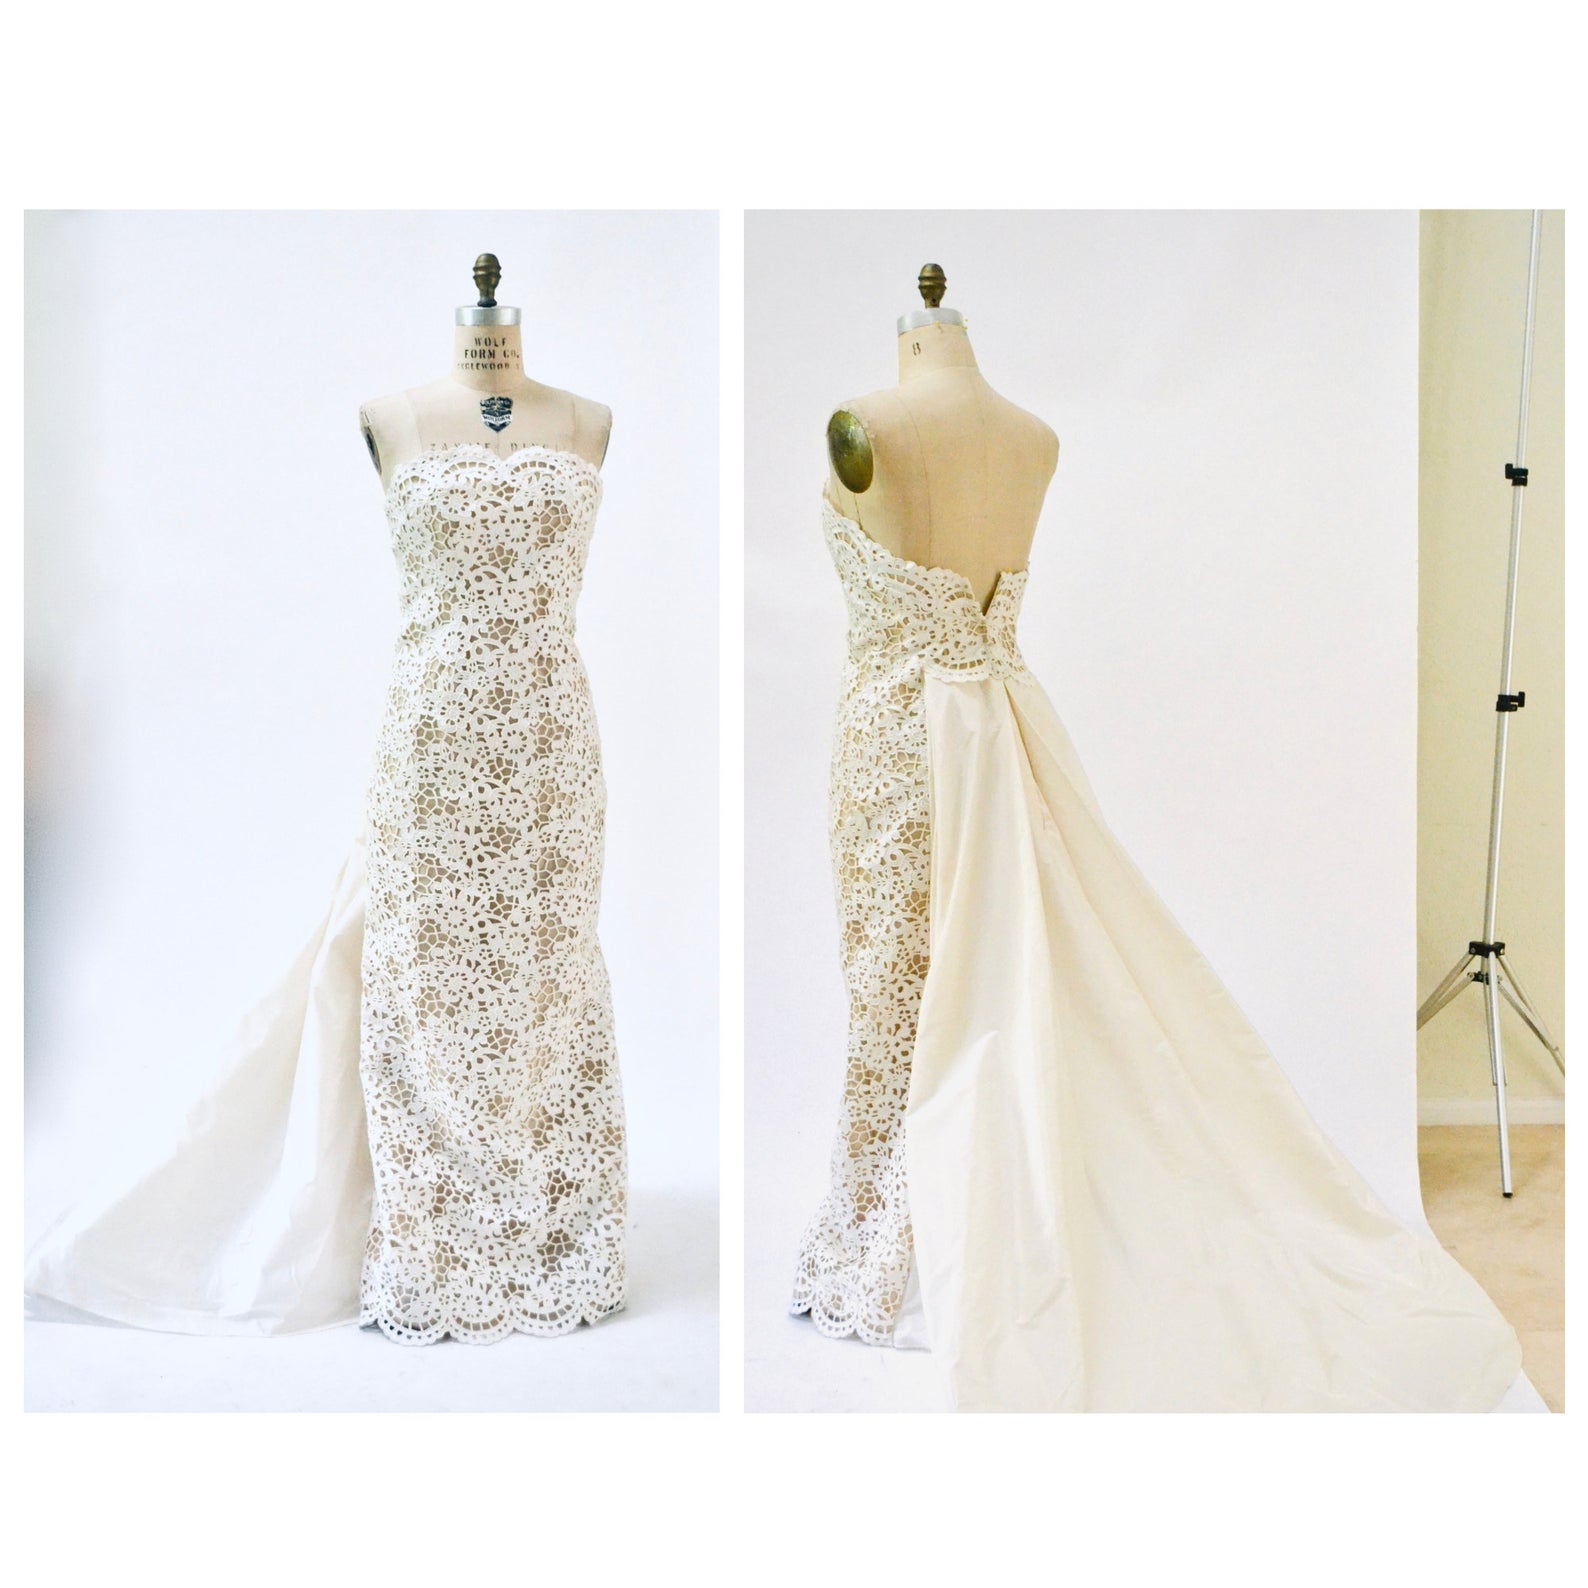 Hookedonhoney vintage wedding dresses from Etsy